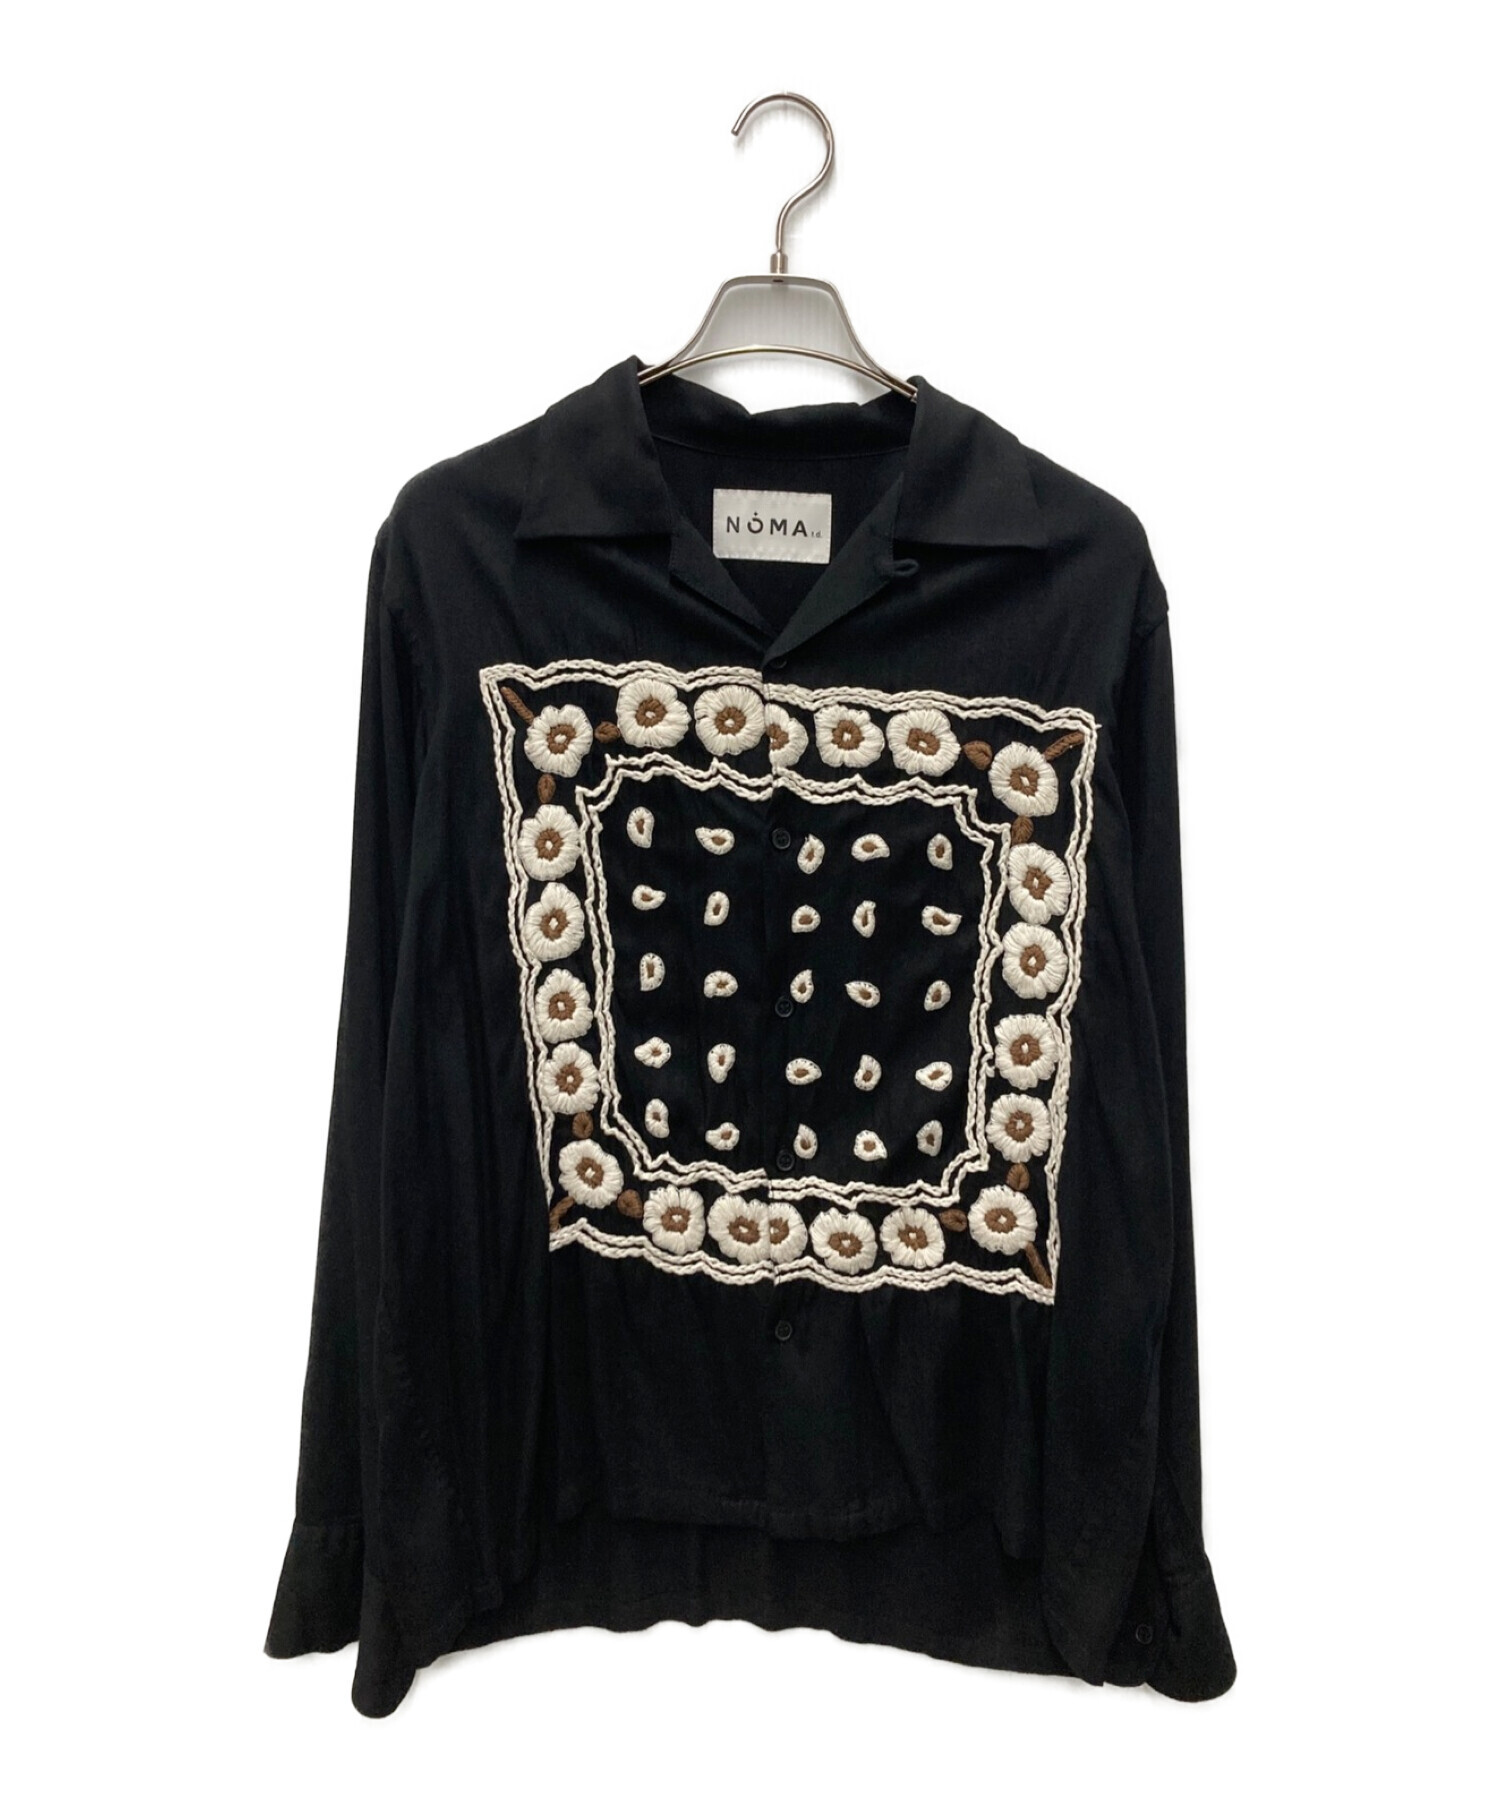 NOMA t.d. (ノーマティーディー) Bandana Hand-Embroidery Shirt/バンダナ ハンドエンブロイダリーシャツ  ブラック サイズ:2